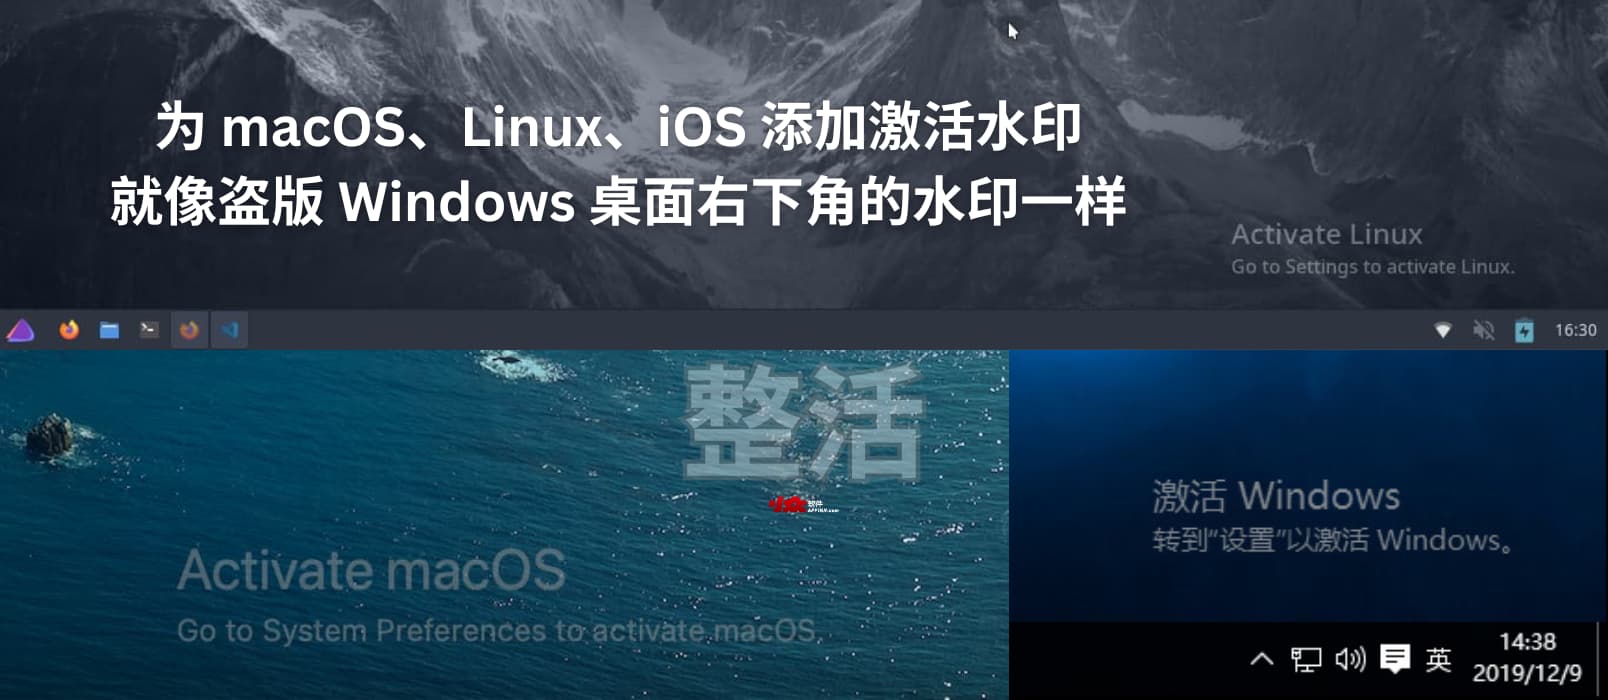 整活：为 macOS、Linux、iOS 添加激活水印，就像盗版 Windows 桌面右下角的水印一样